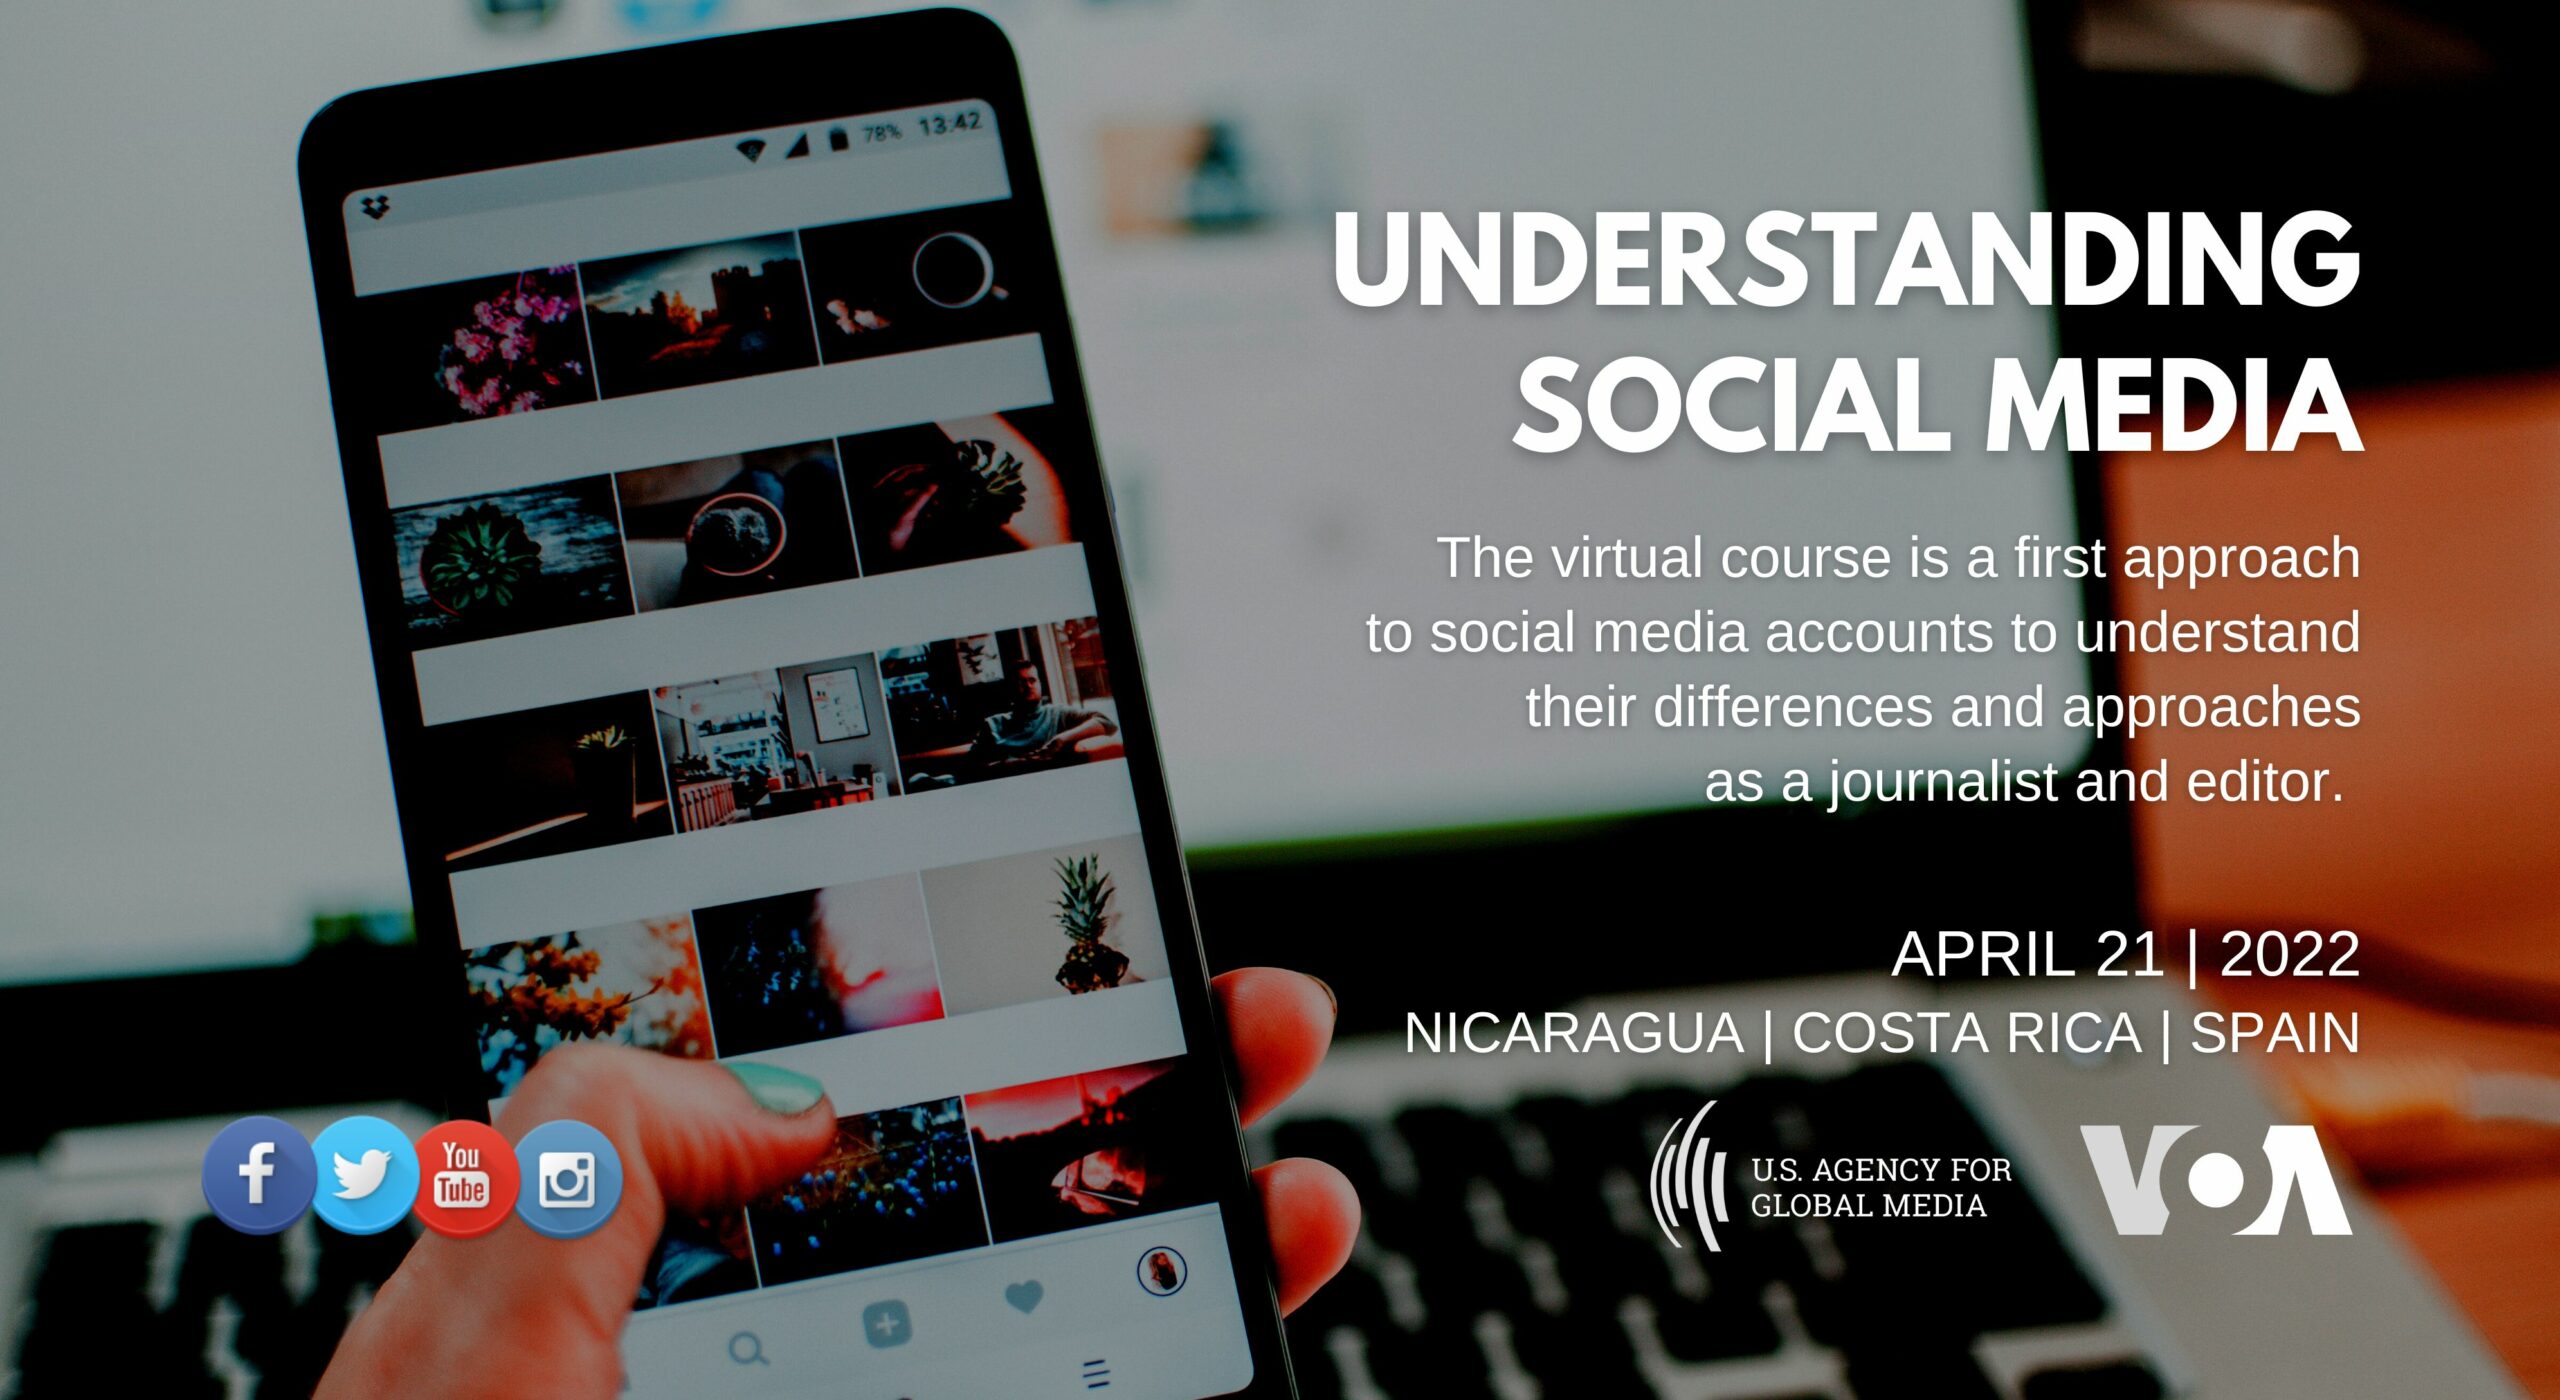 Nicaragua: Understanding social media